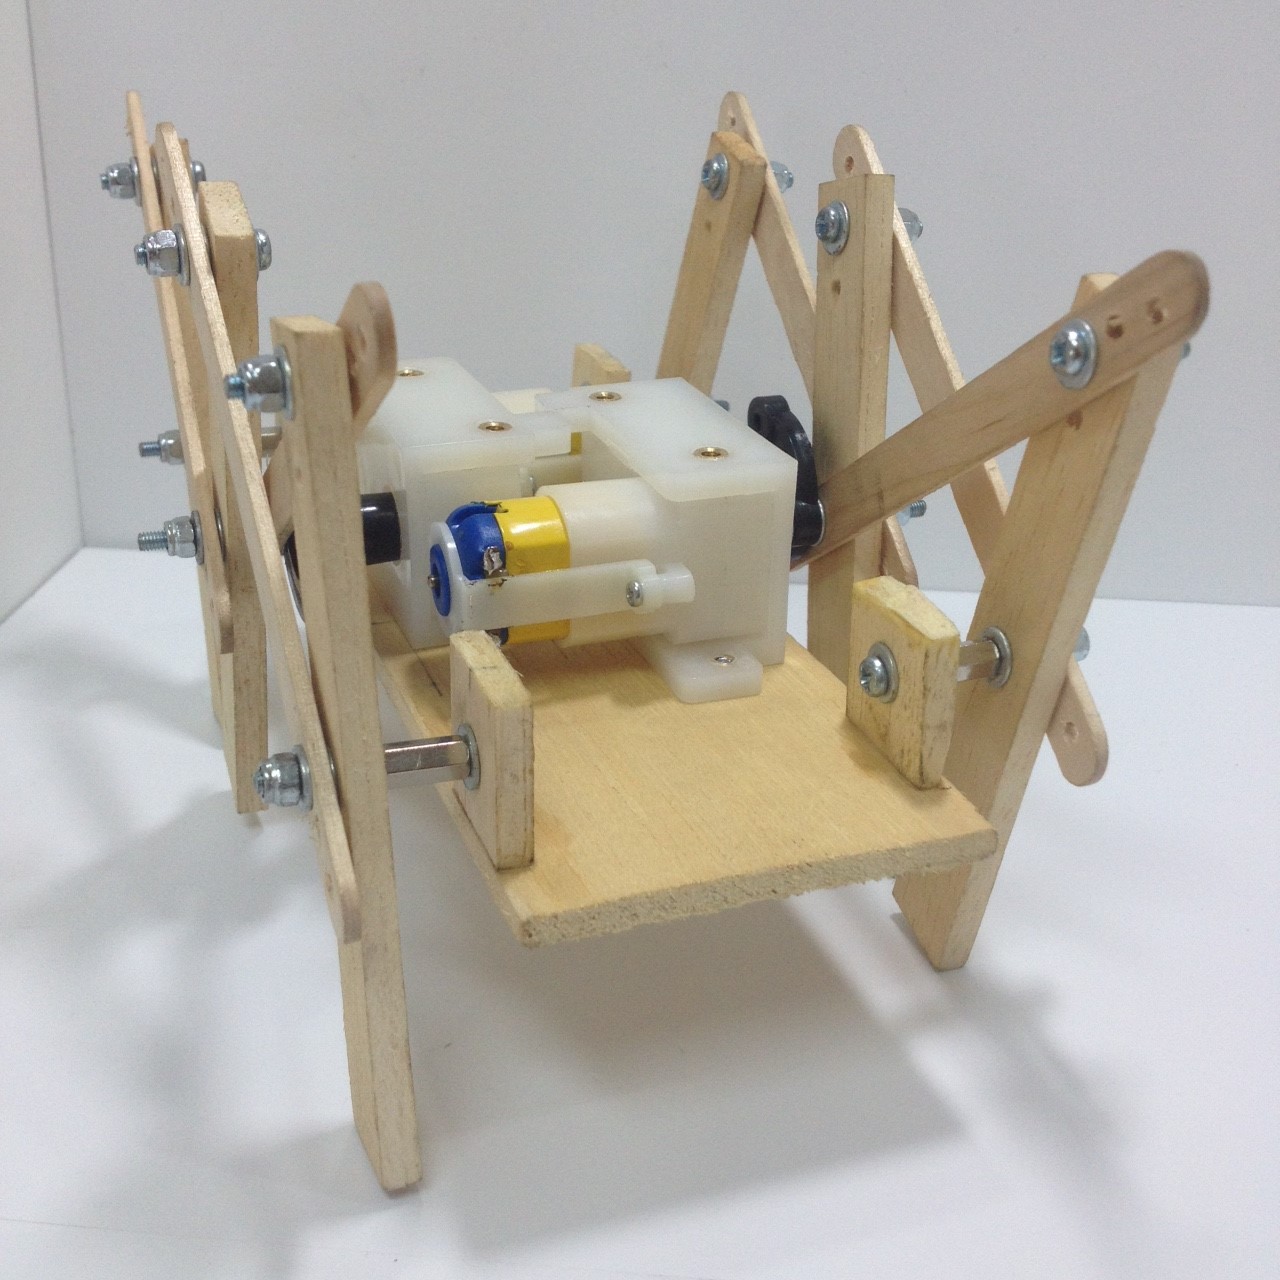 ชุดประกอบสำเร็จ หุ่นเดินหกขาโครงสร้างไม้ รุ่น Modify (ไม่รวมรีโมท)